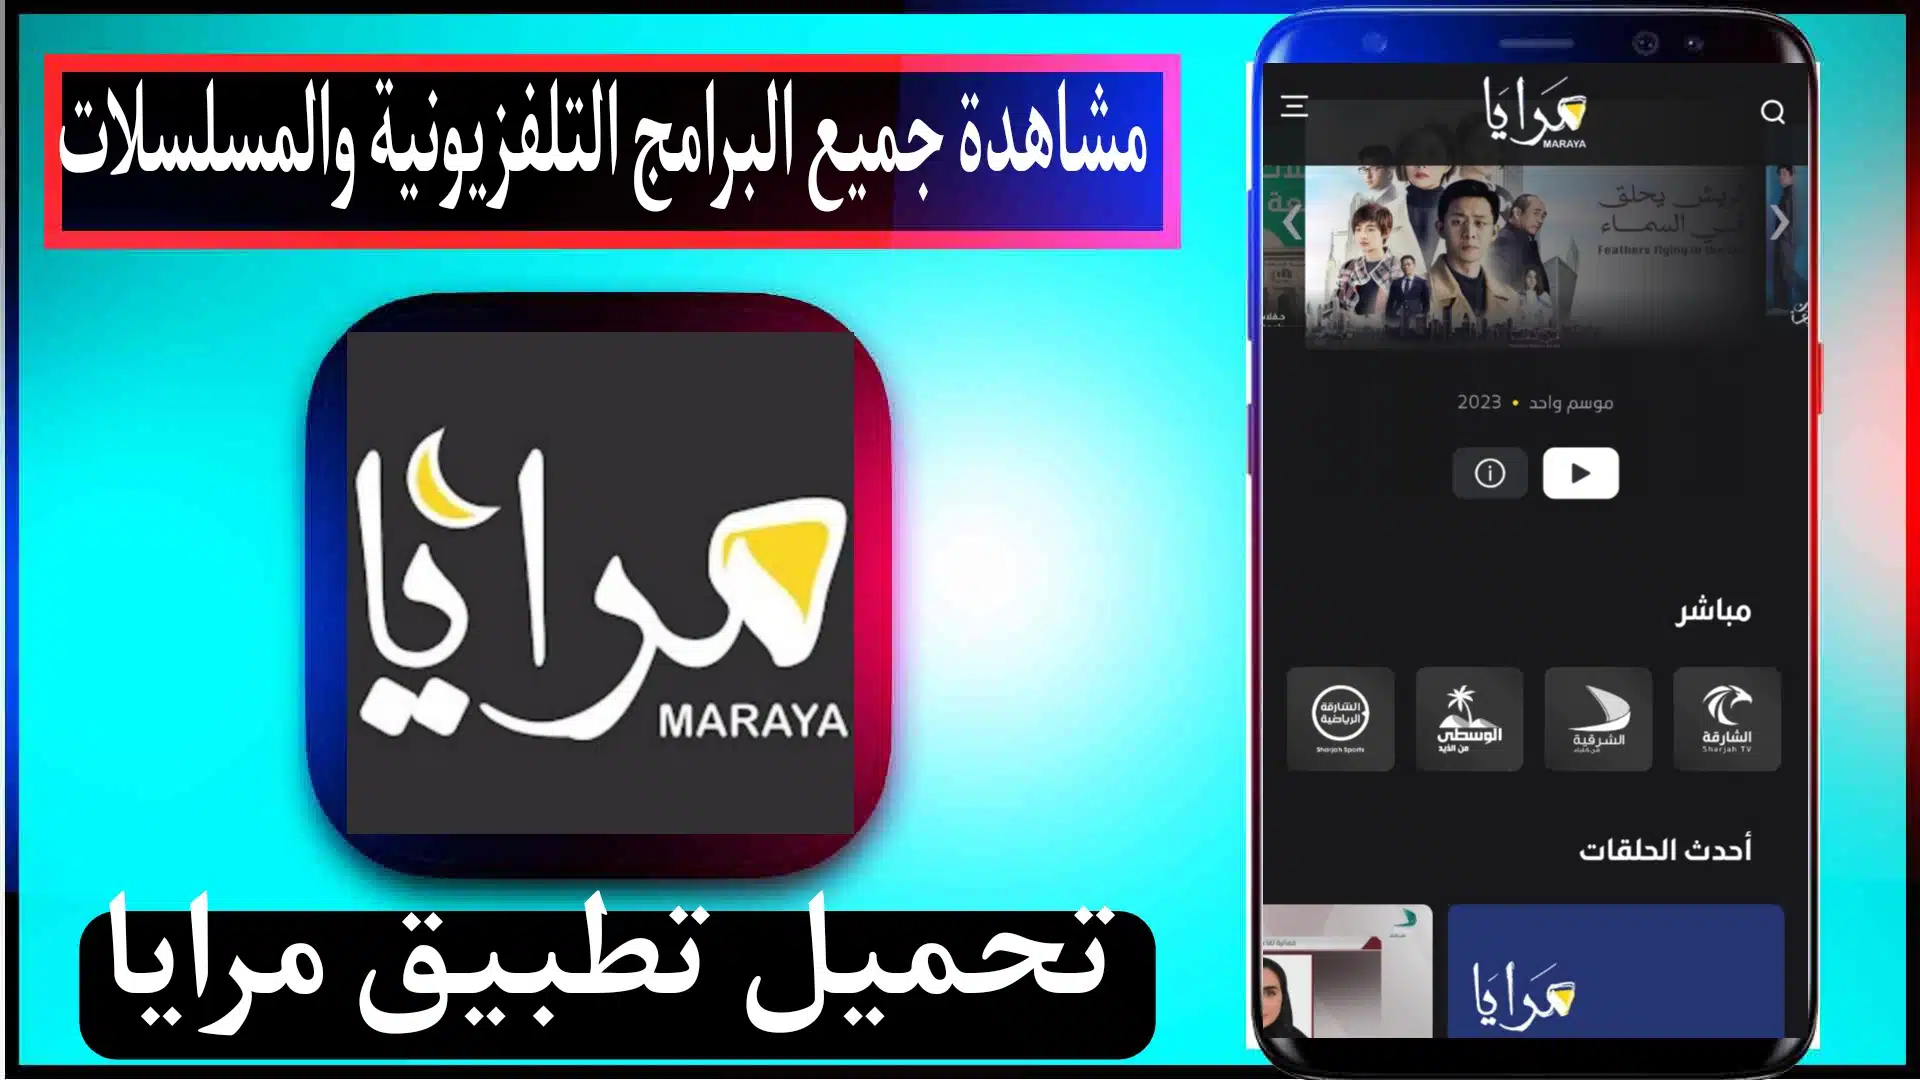 تحميل تطبيق مرايا maraya للايفون وللاندرويد 2024 مجانا اخر اصدار من ميديا فاير 1